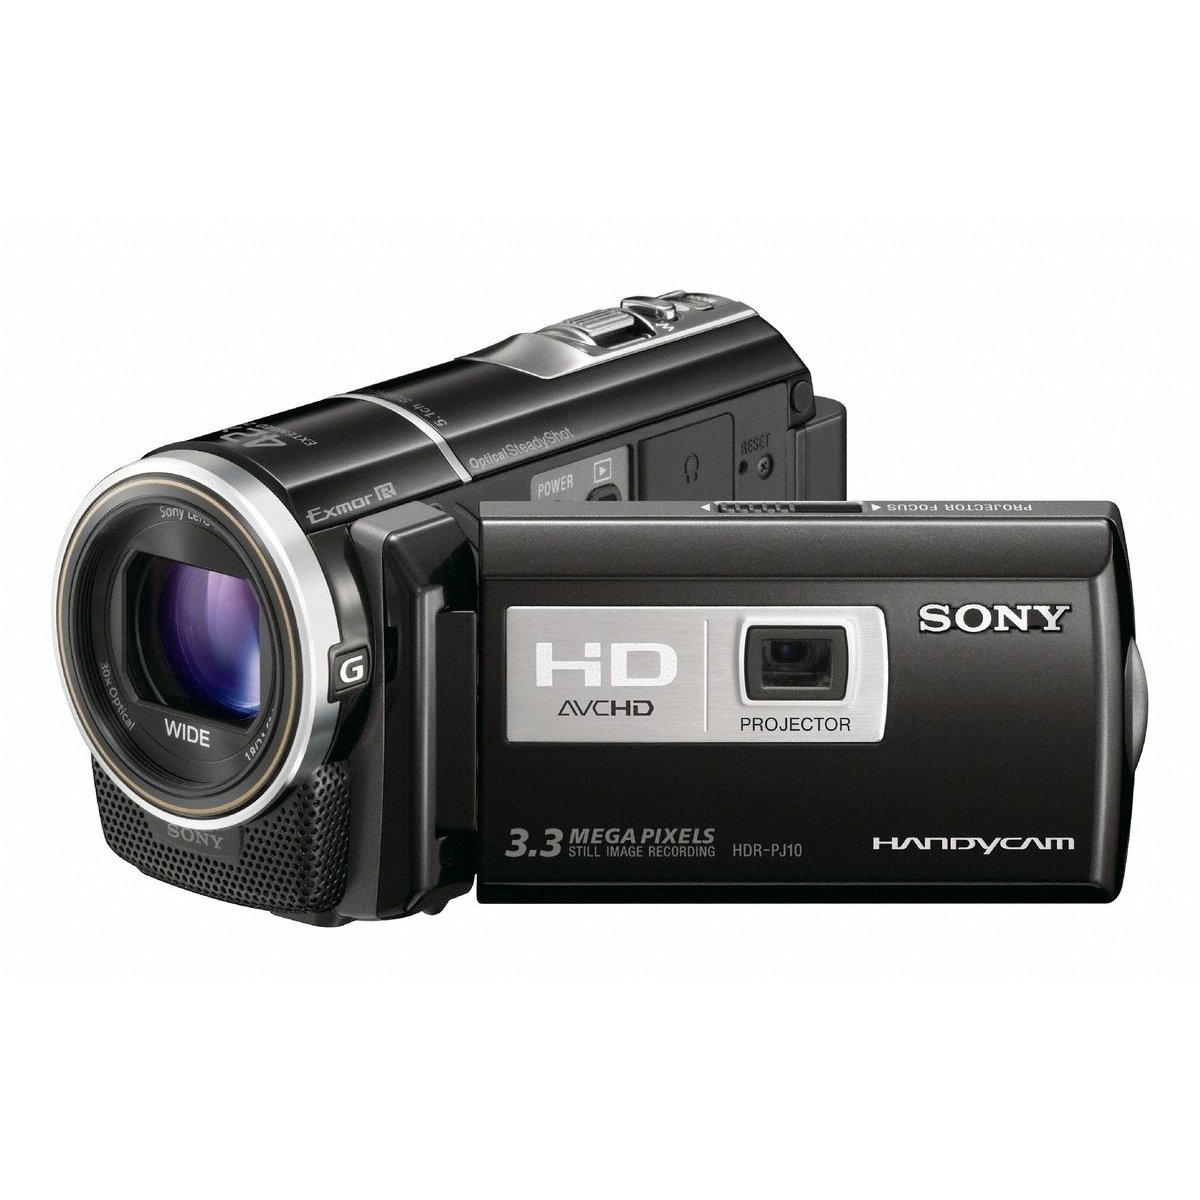 HD Video Cameras